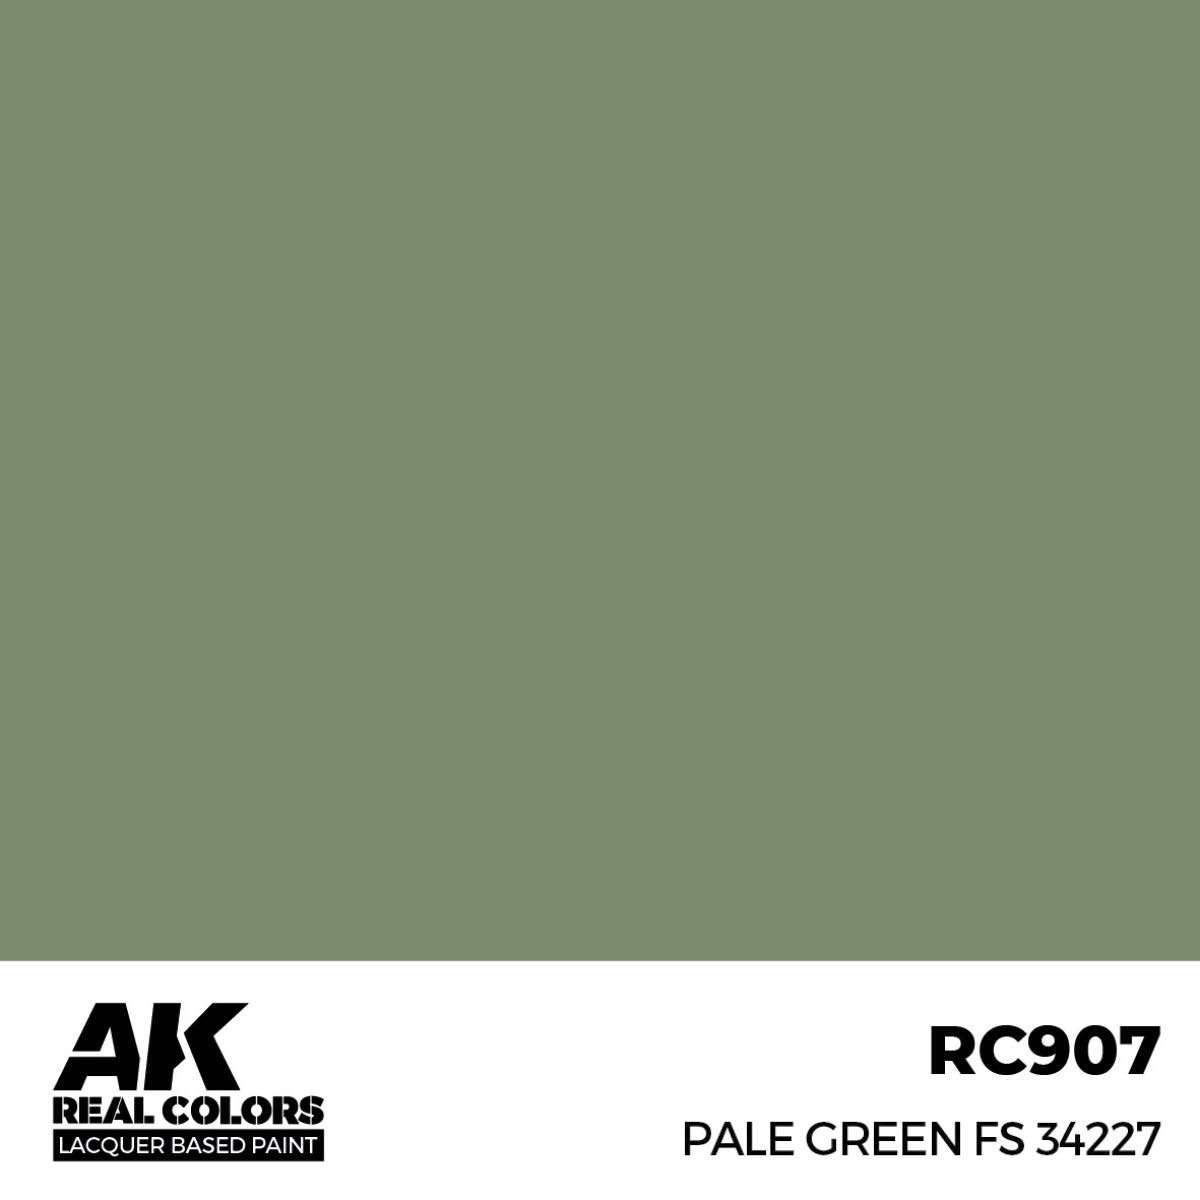 Pale Green FS 34227